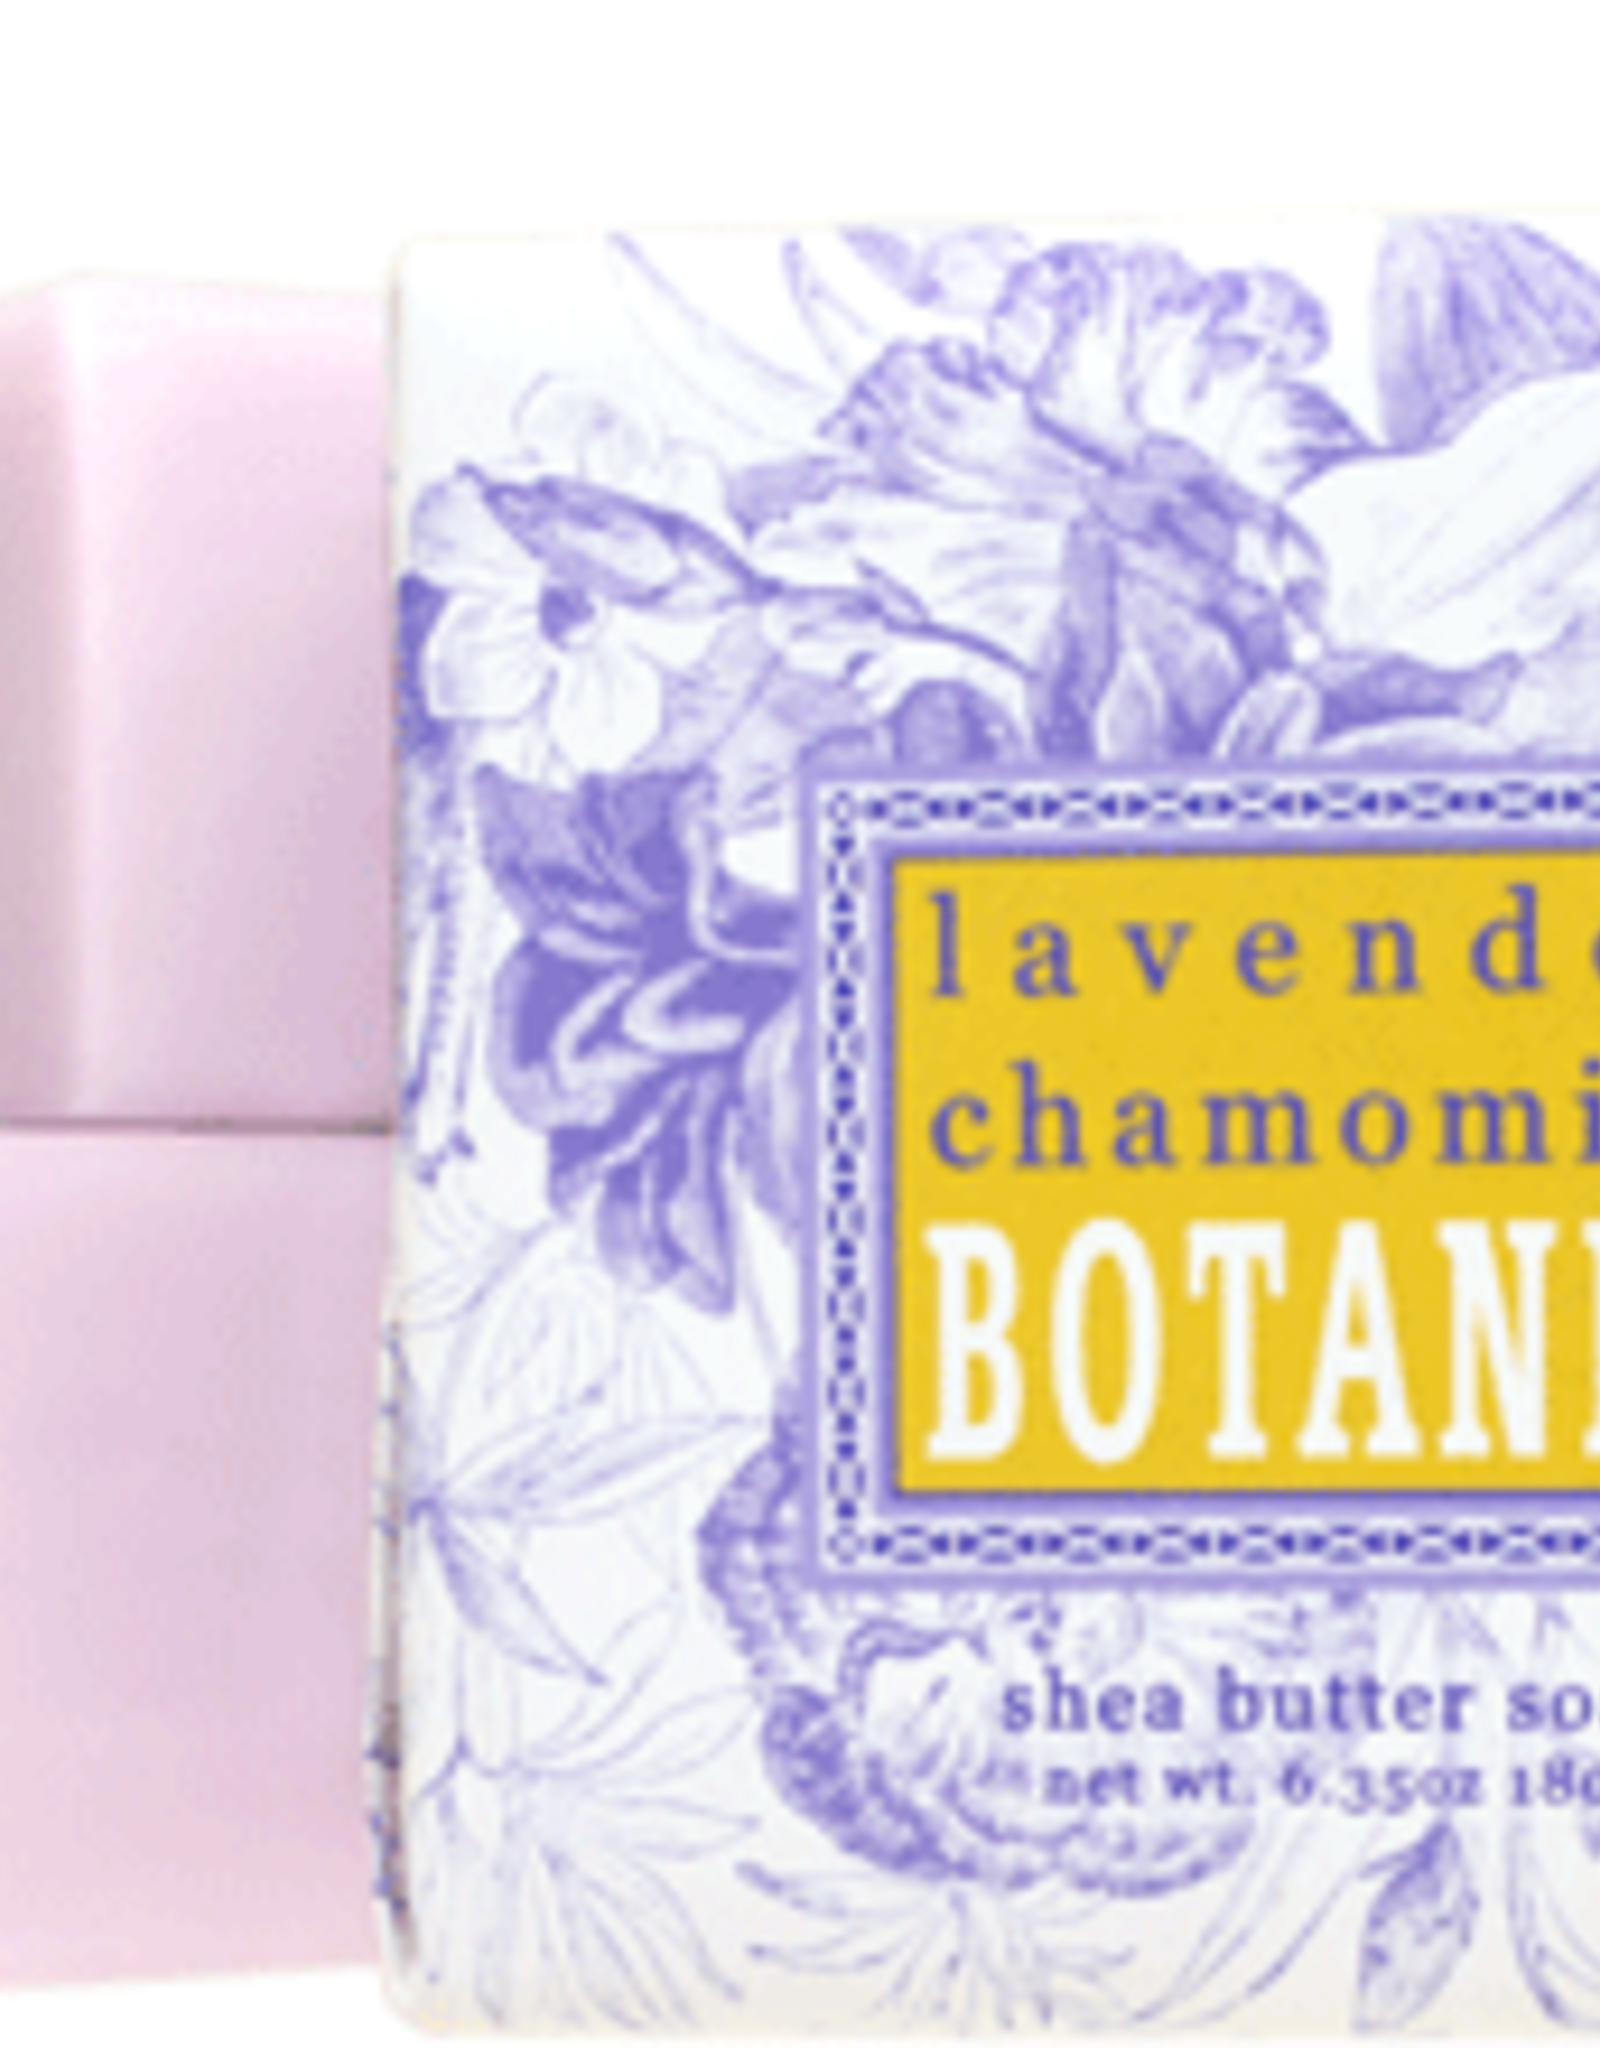 Womens Greenwich Bay - Lavender and Chamomile Mini Soap